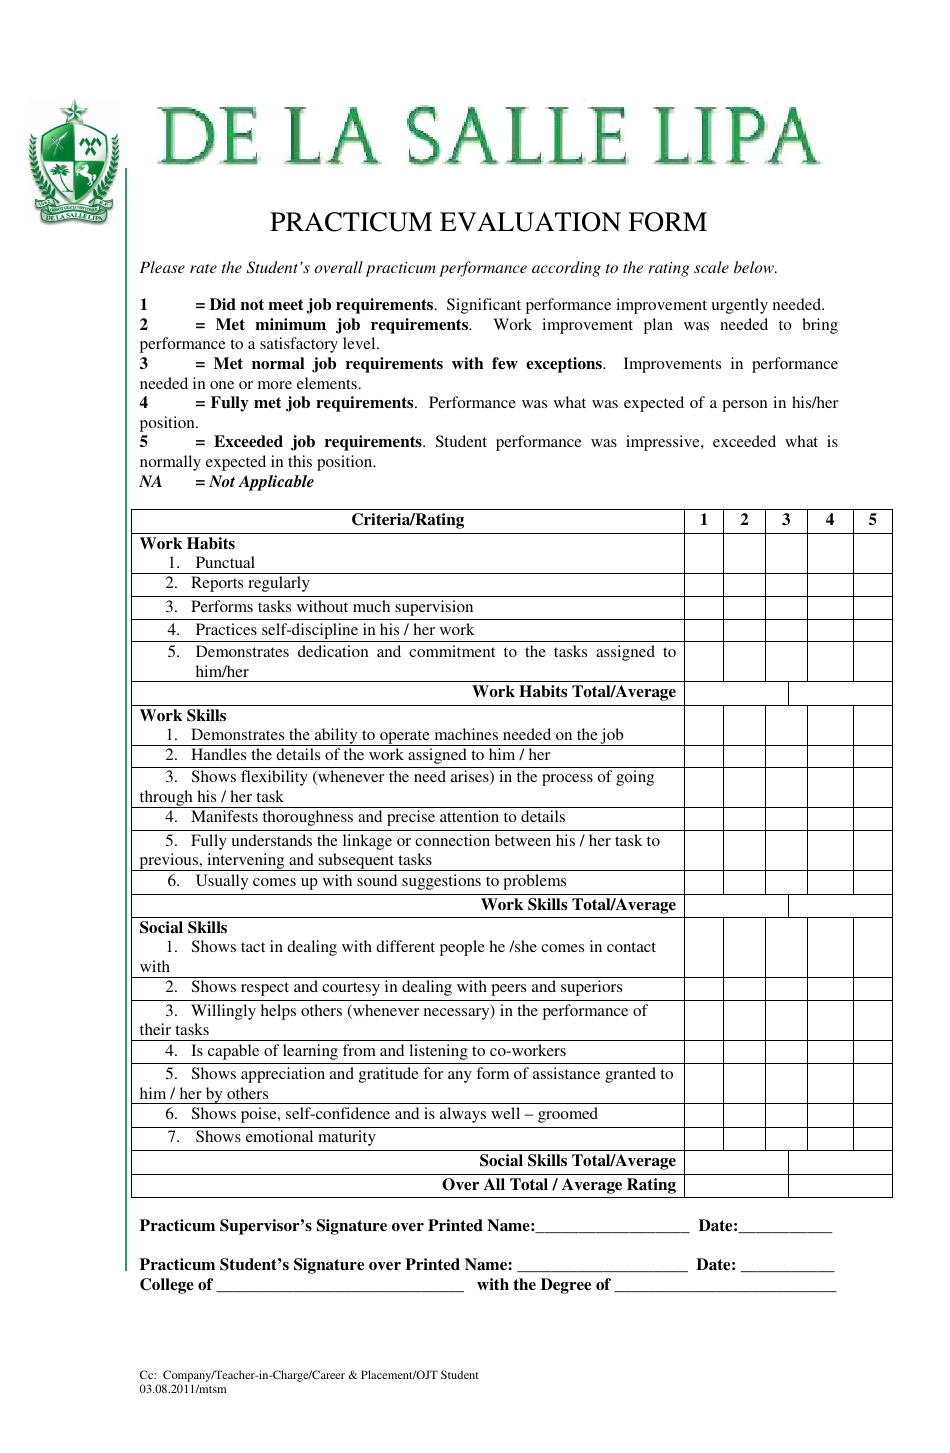 Practicum Evaluation Form - De La Salle Lipa University, Page 1